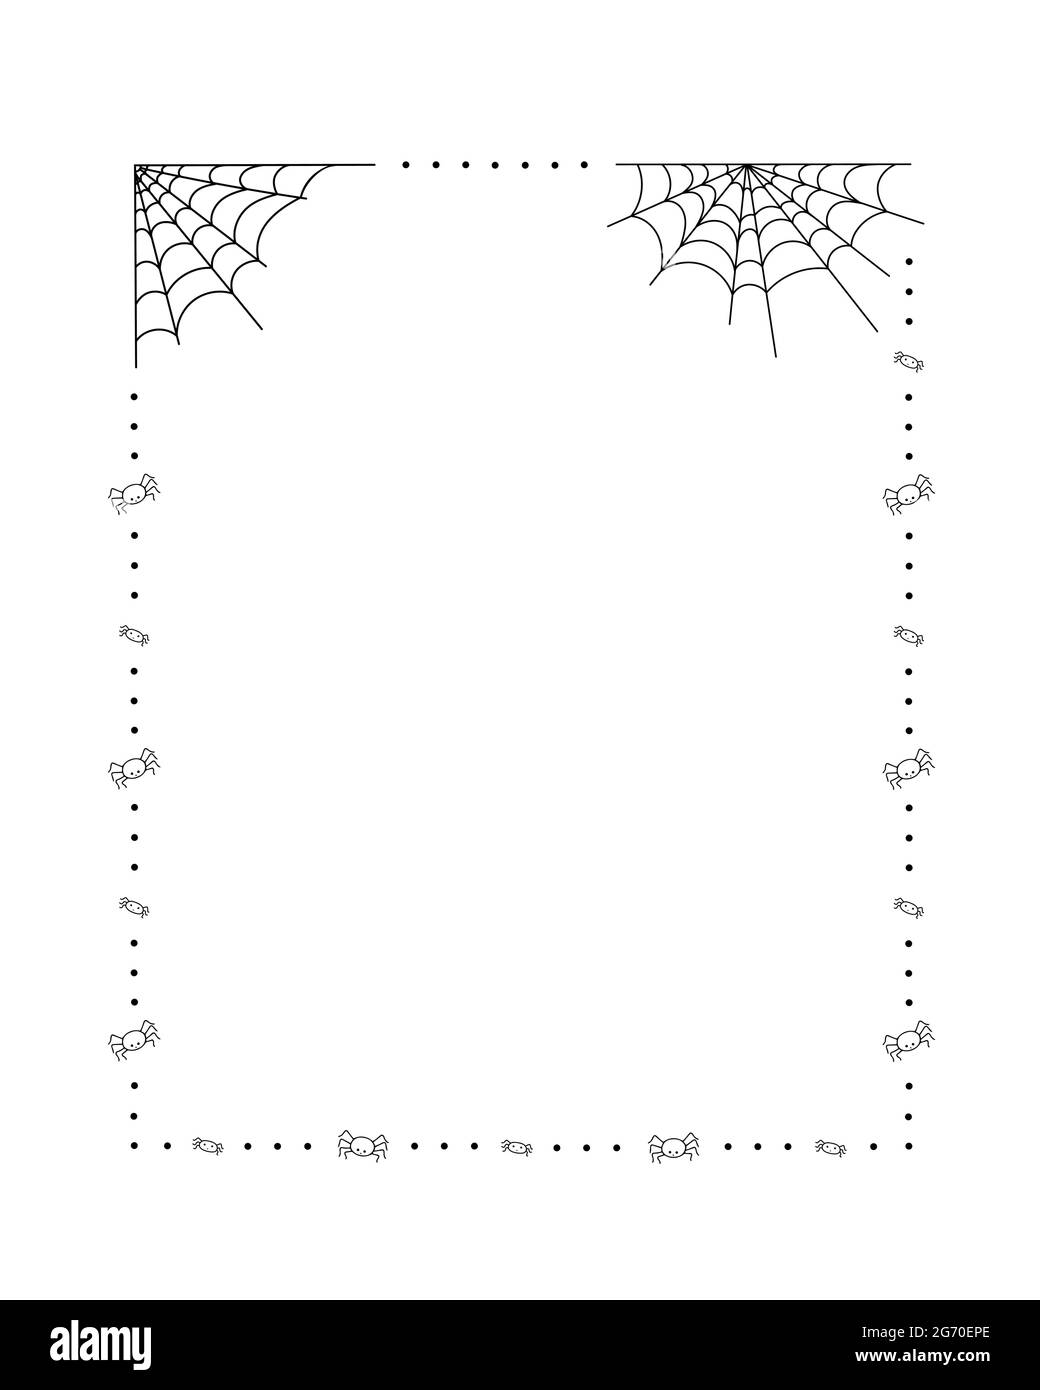 Spinnennetz, Polka Punkte und kleine Spinnen Rahmen einfache Hand gezeichnet Vektor skizzieren Illustration von Doodle Phantasie Halloween gruselige Dekor-Elemente, perfekt für Halloween-Party, Cartoon gruseligen Charakter Stock Vektor